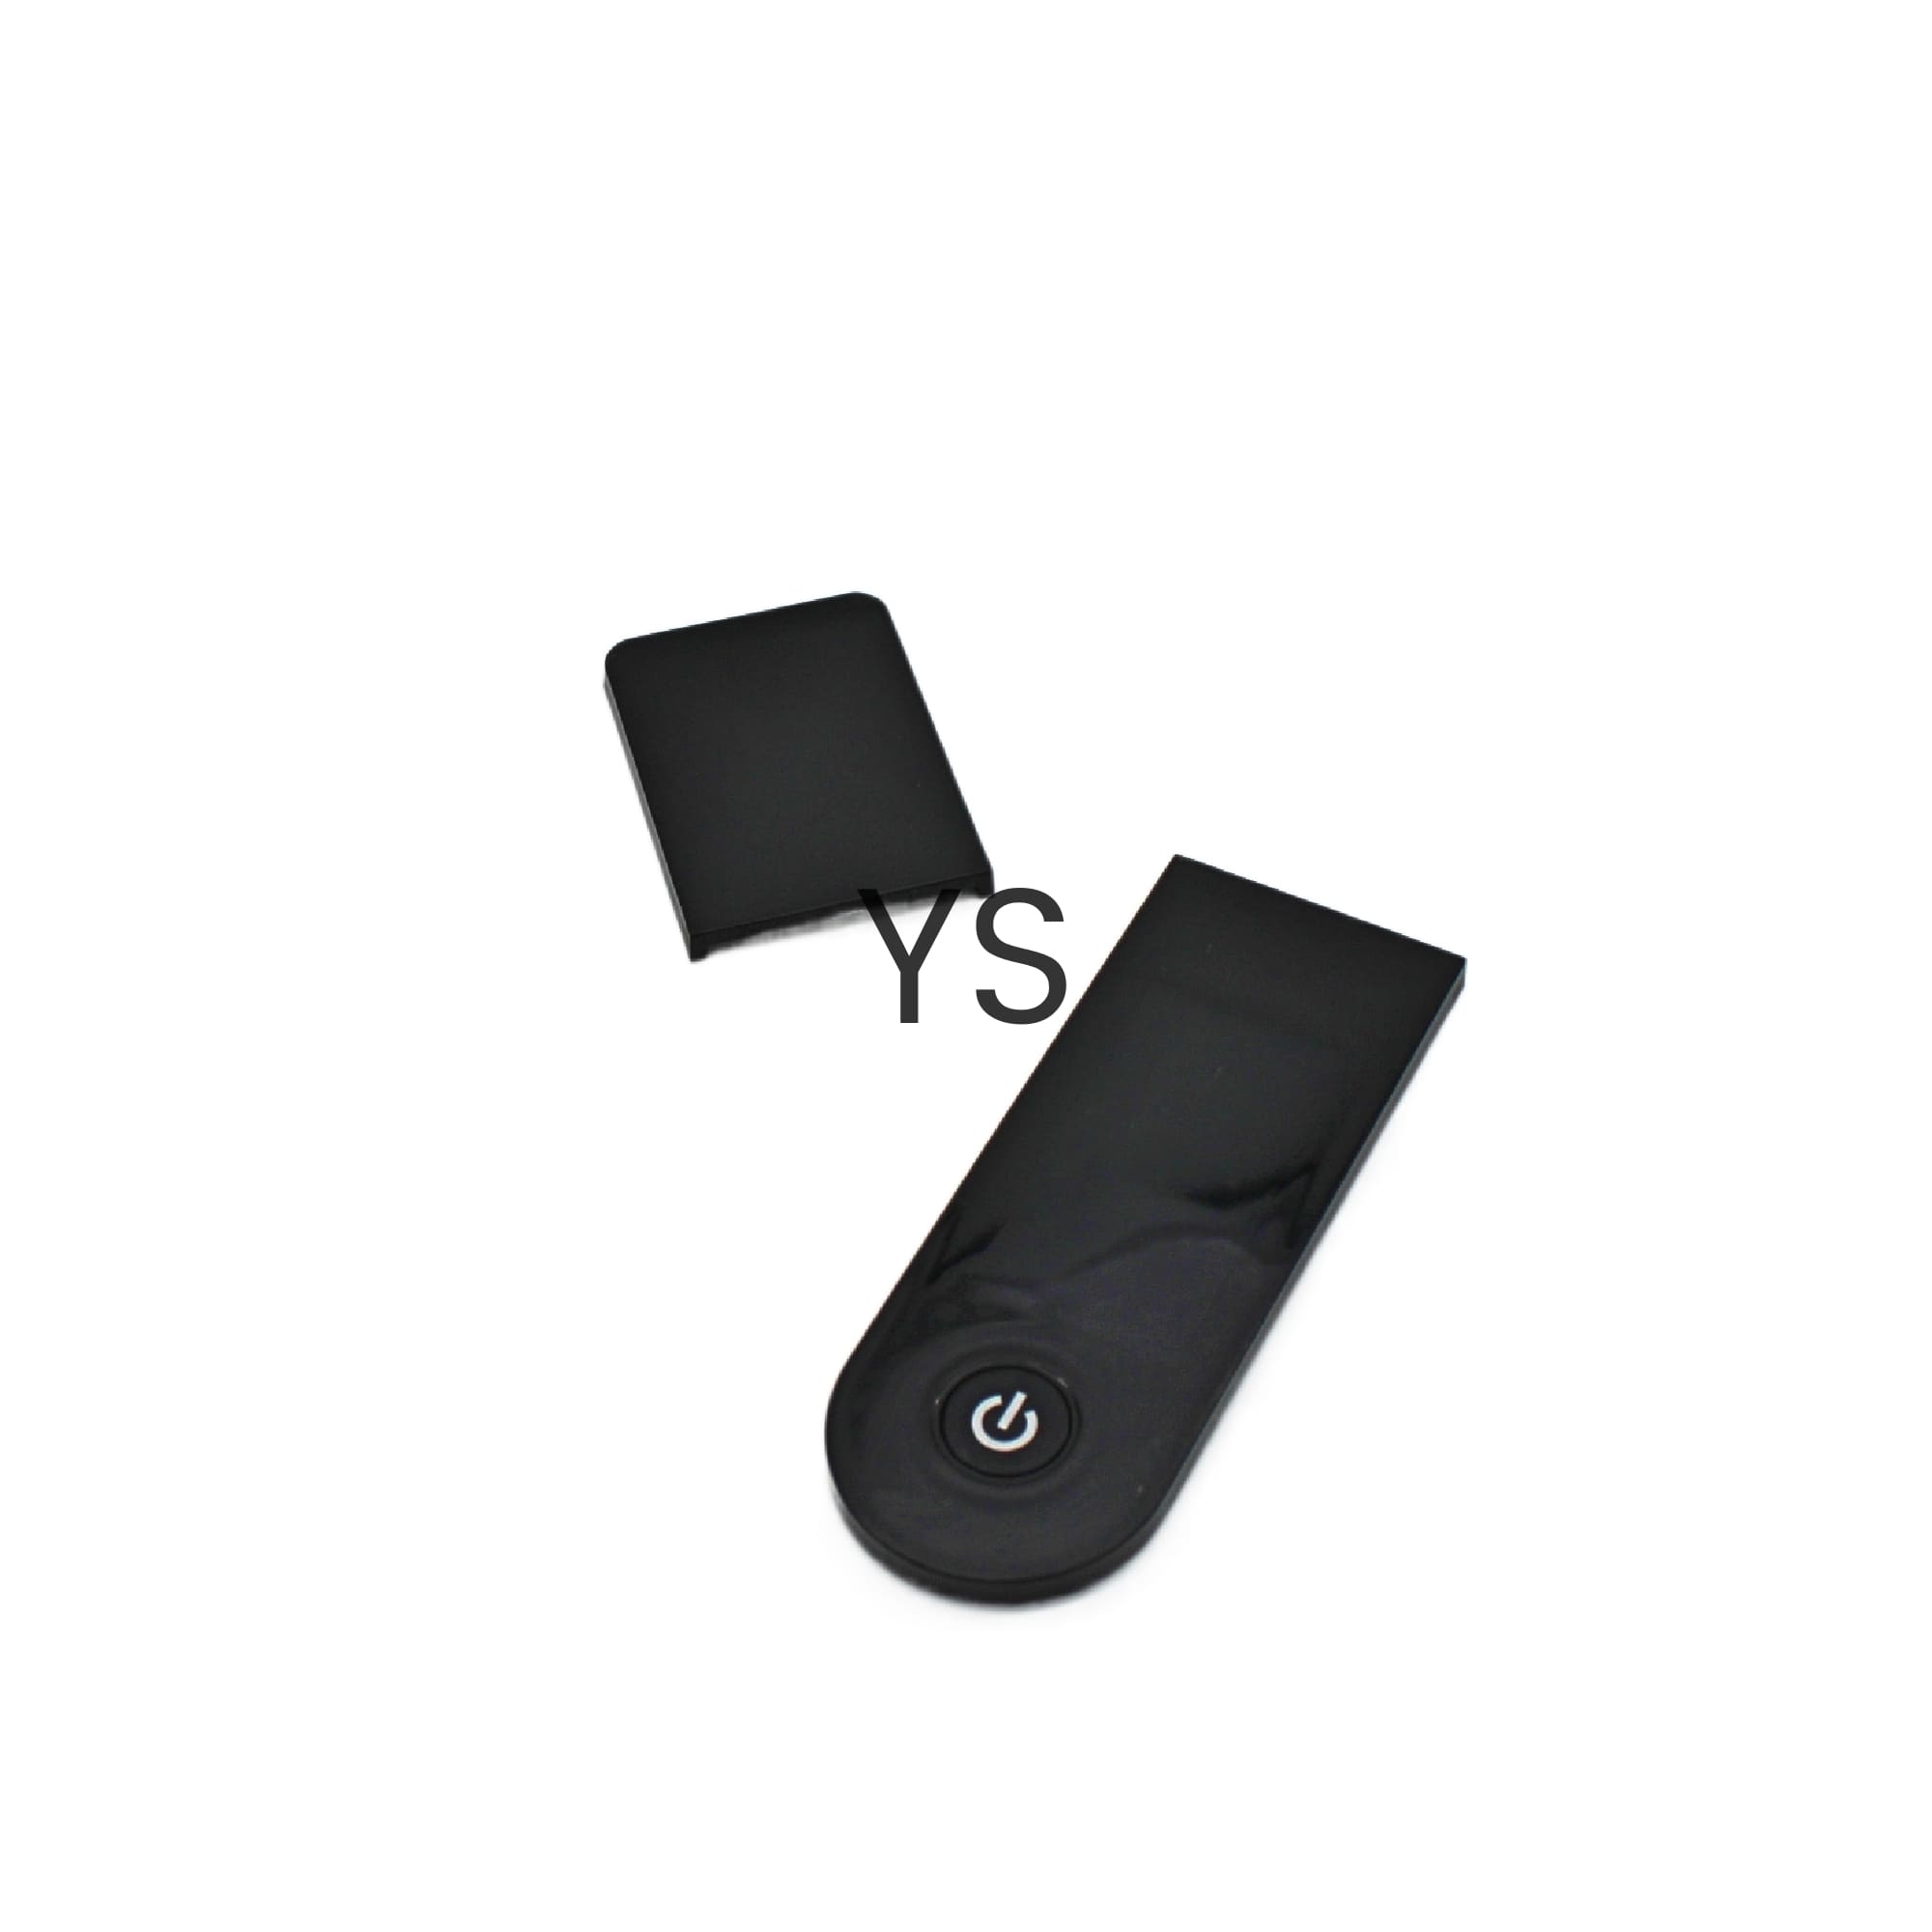 Bildschirm + Abdeckung für Xiaomi Pro Scooter Kompatibel